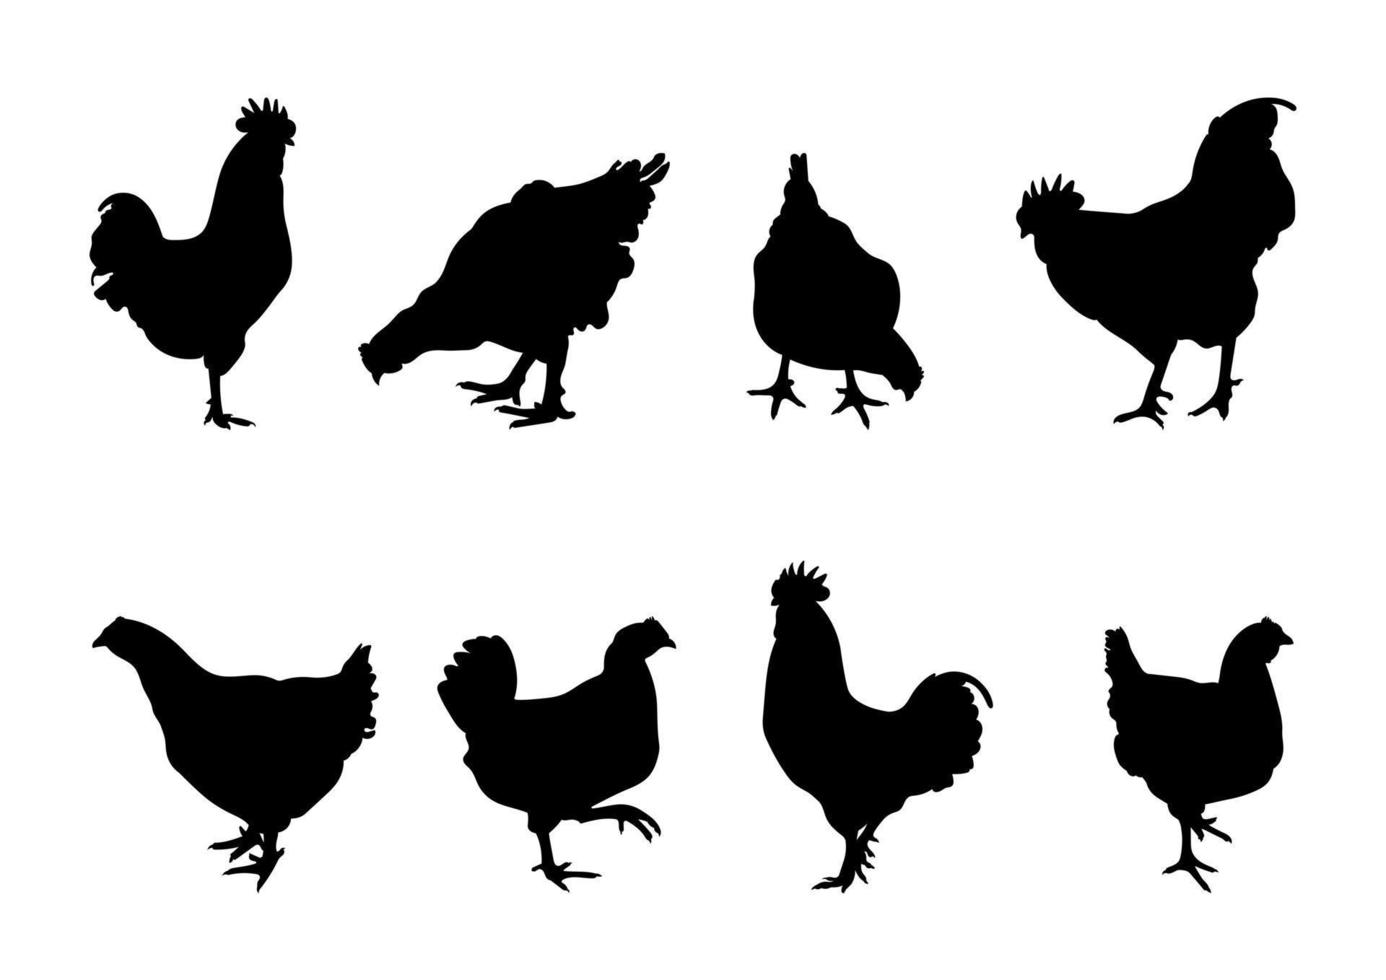 Hahn, Hähnchen, Hahn, Zwerghühner, Huhn, Henne, Küken im Stehen, verschiedene Packungen Vogelsilhouetten, isolierter Vektor